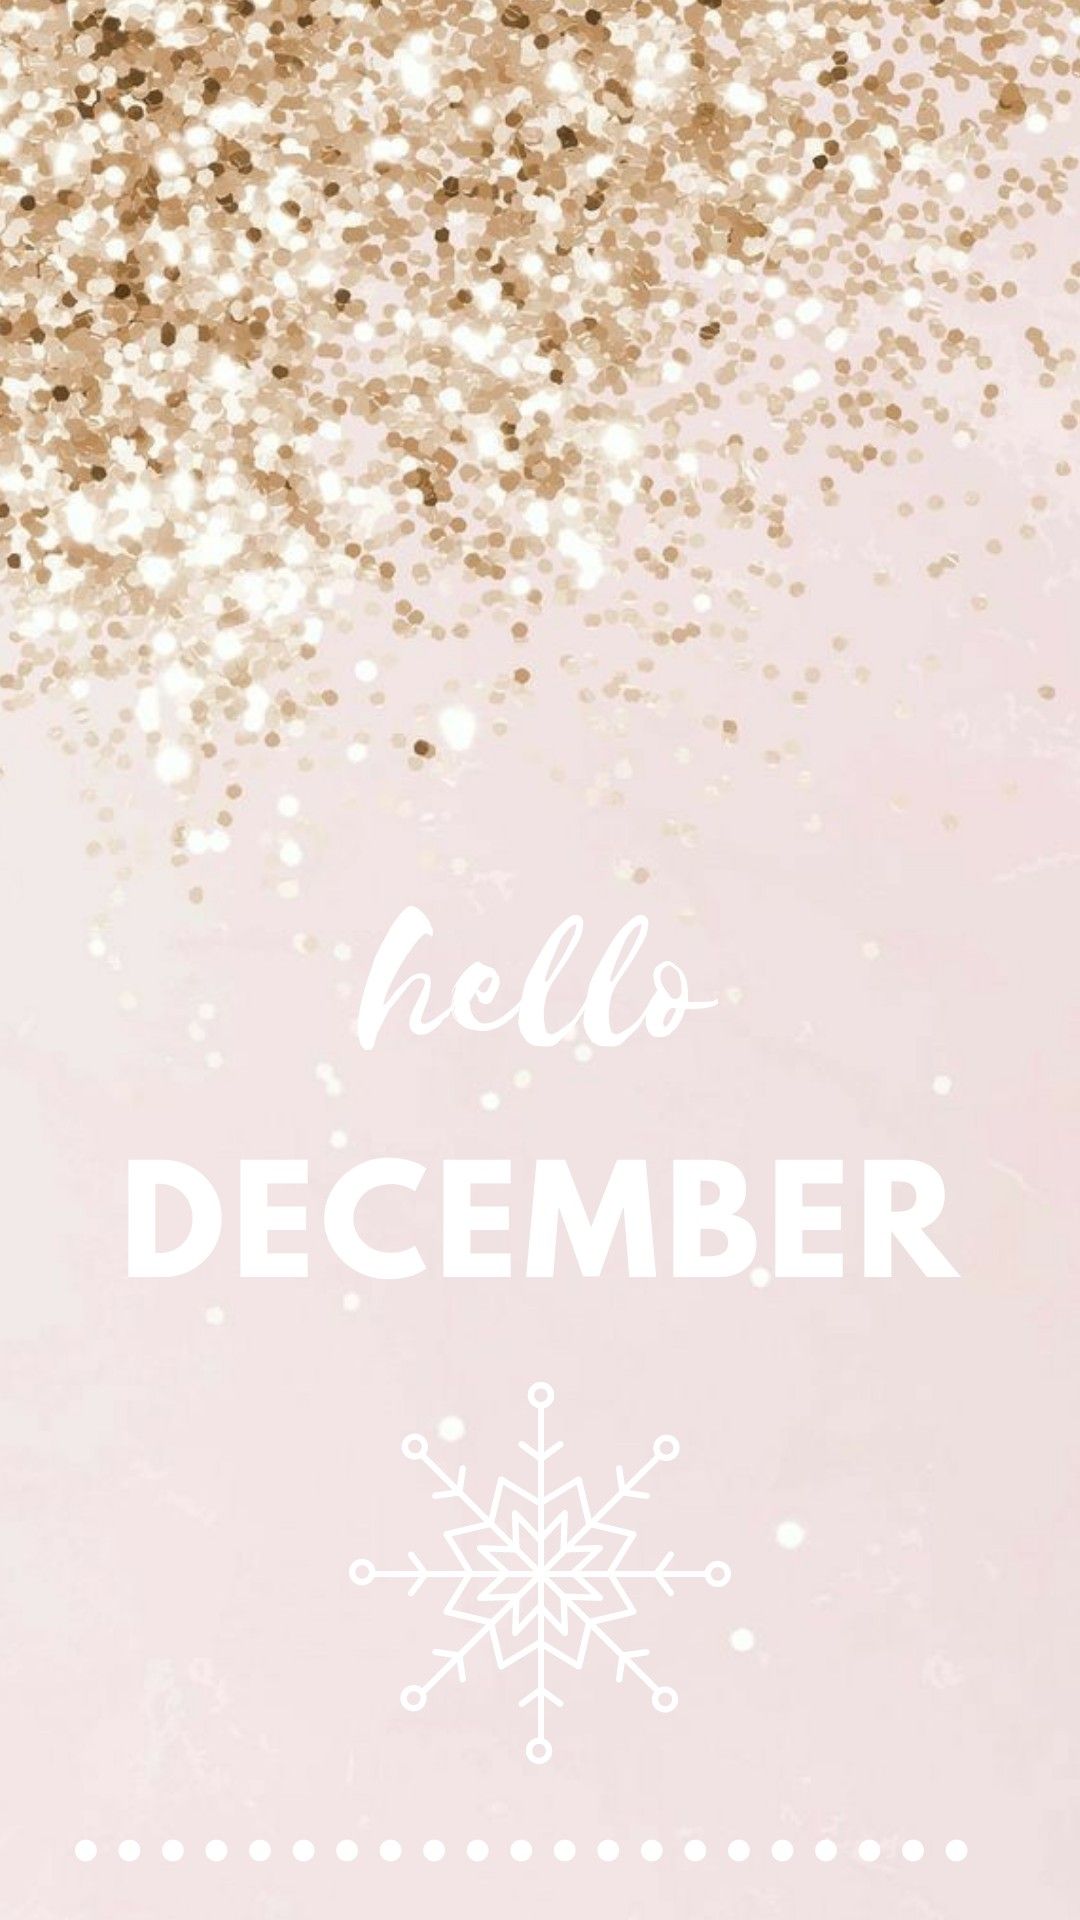 december wallpaper hello december. December wallpaper, Christmas wallpaper iphone cute, Hello december